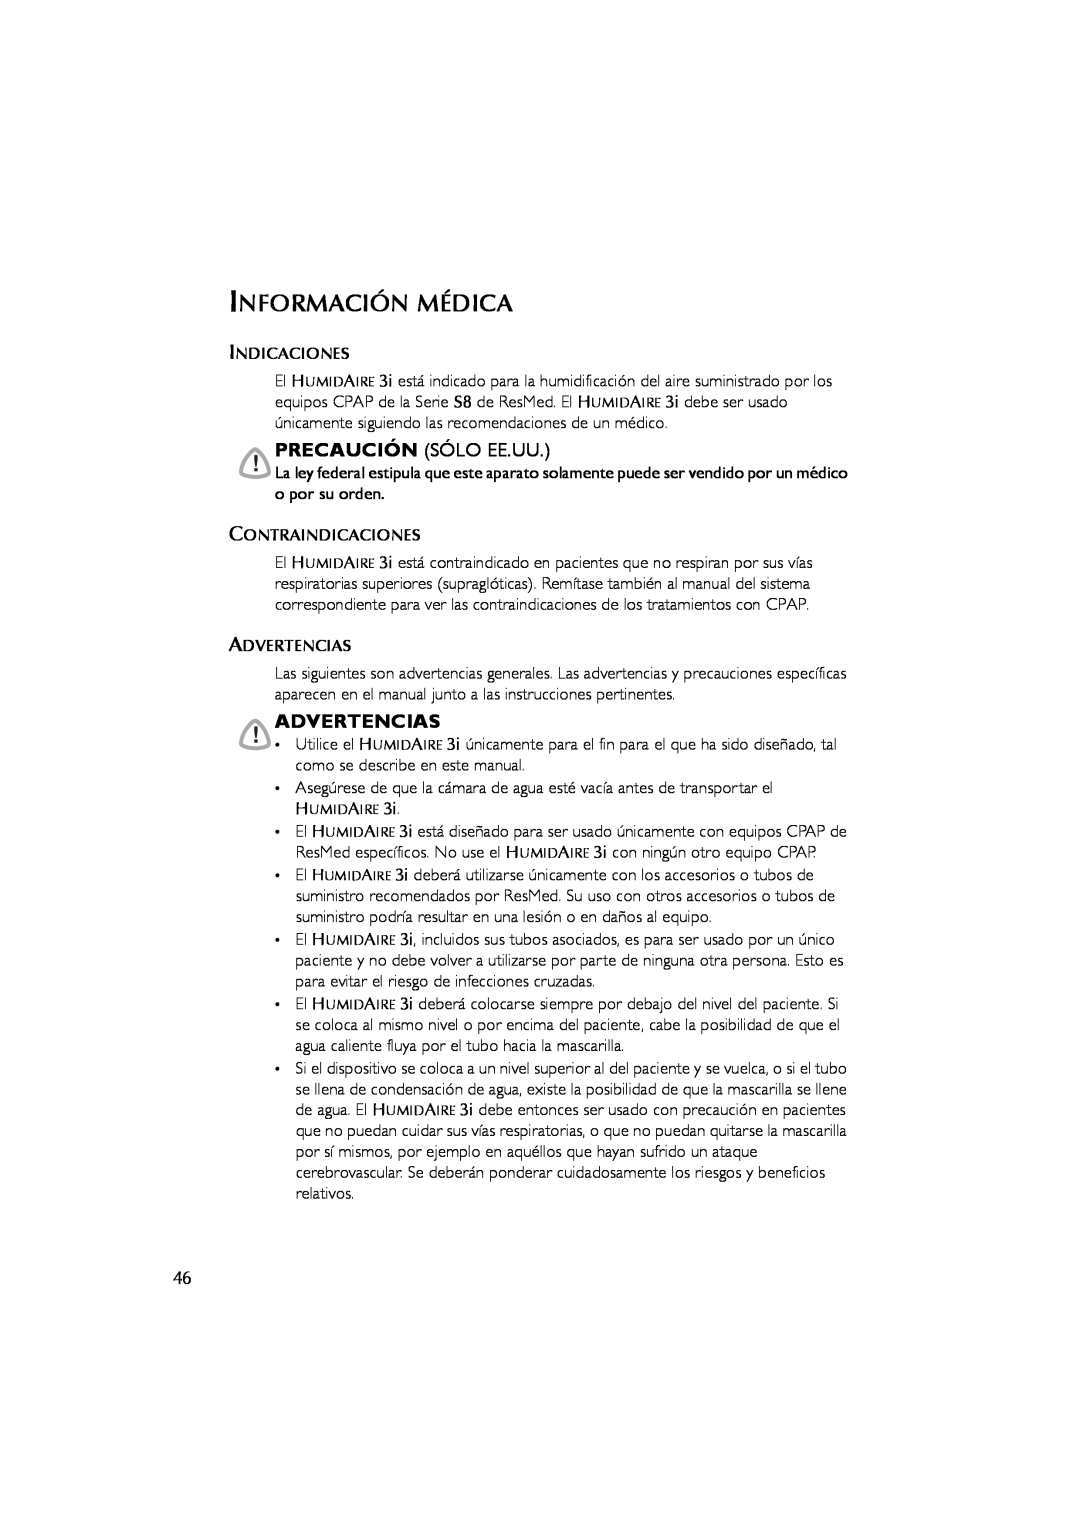 ResMed 3I user manual Información Médica, Precaución Sólo Ee.Uu, Advertencias 